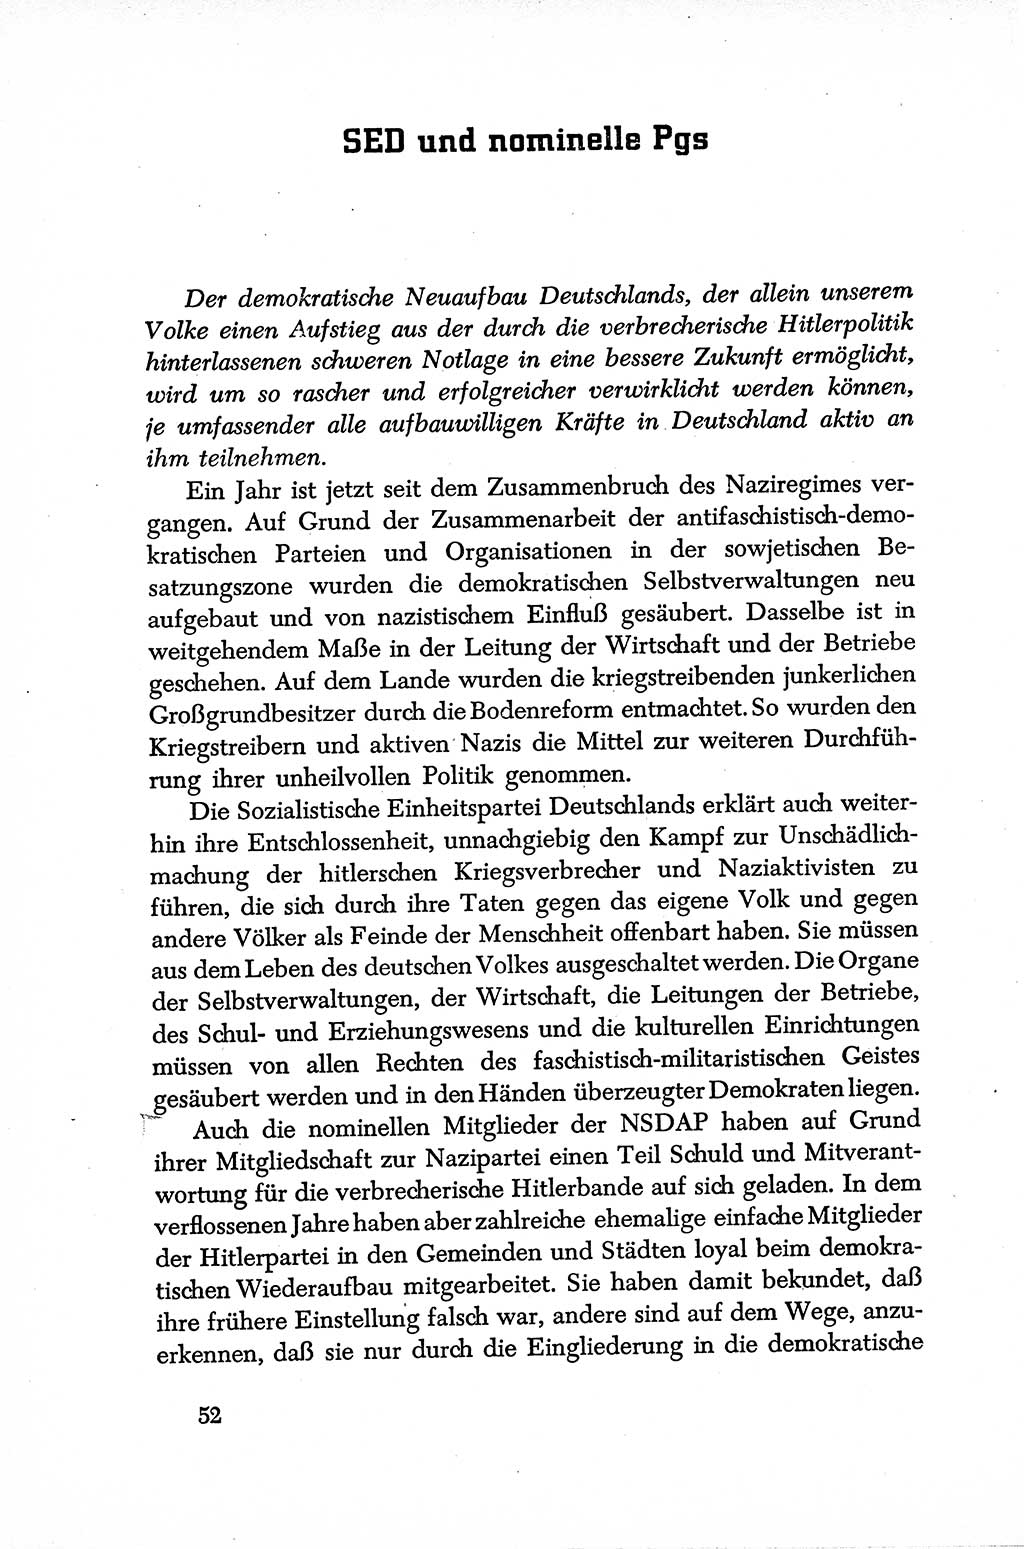 Dokumente der Sozialistischen Einheitspartei Deutschlands (SED) [Sowjetische Besatzungszone (SBZ) Deutschlands] 1946-1948, Seite 52 (Dok. SED SBZ Dtl. 1946-1948, S. 52)